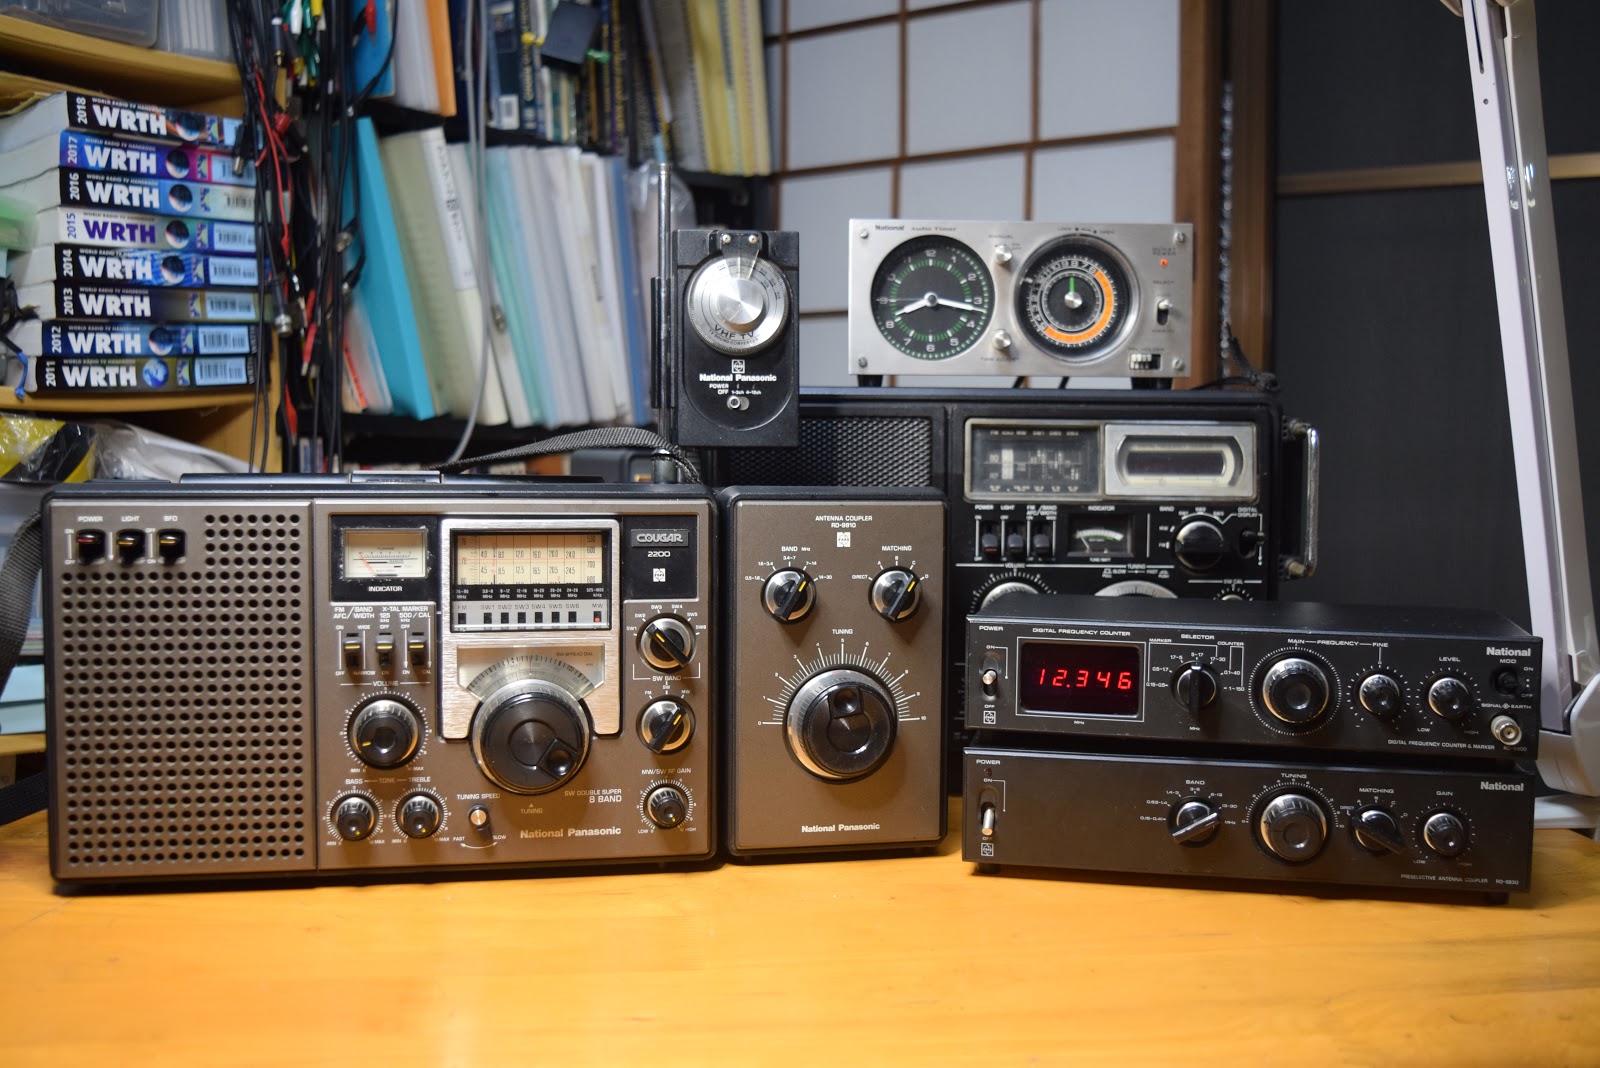 ナショナル クーガー 2200+アンテナカプラーRD-9810 セット - ラジオ